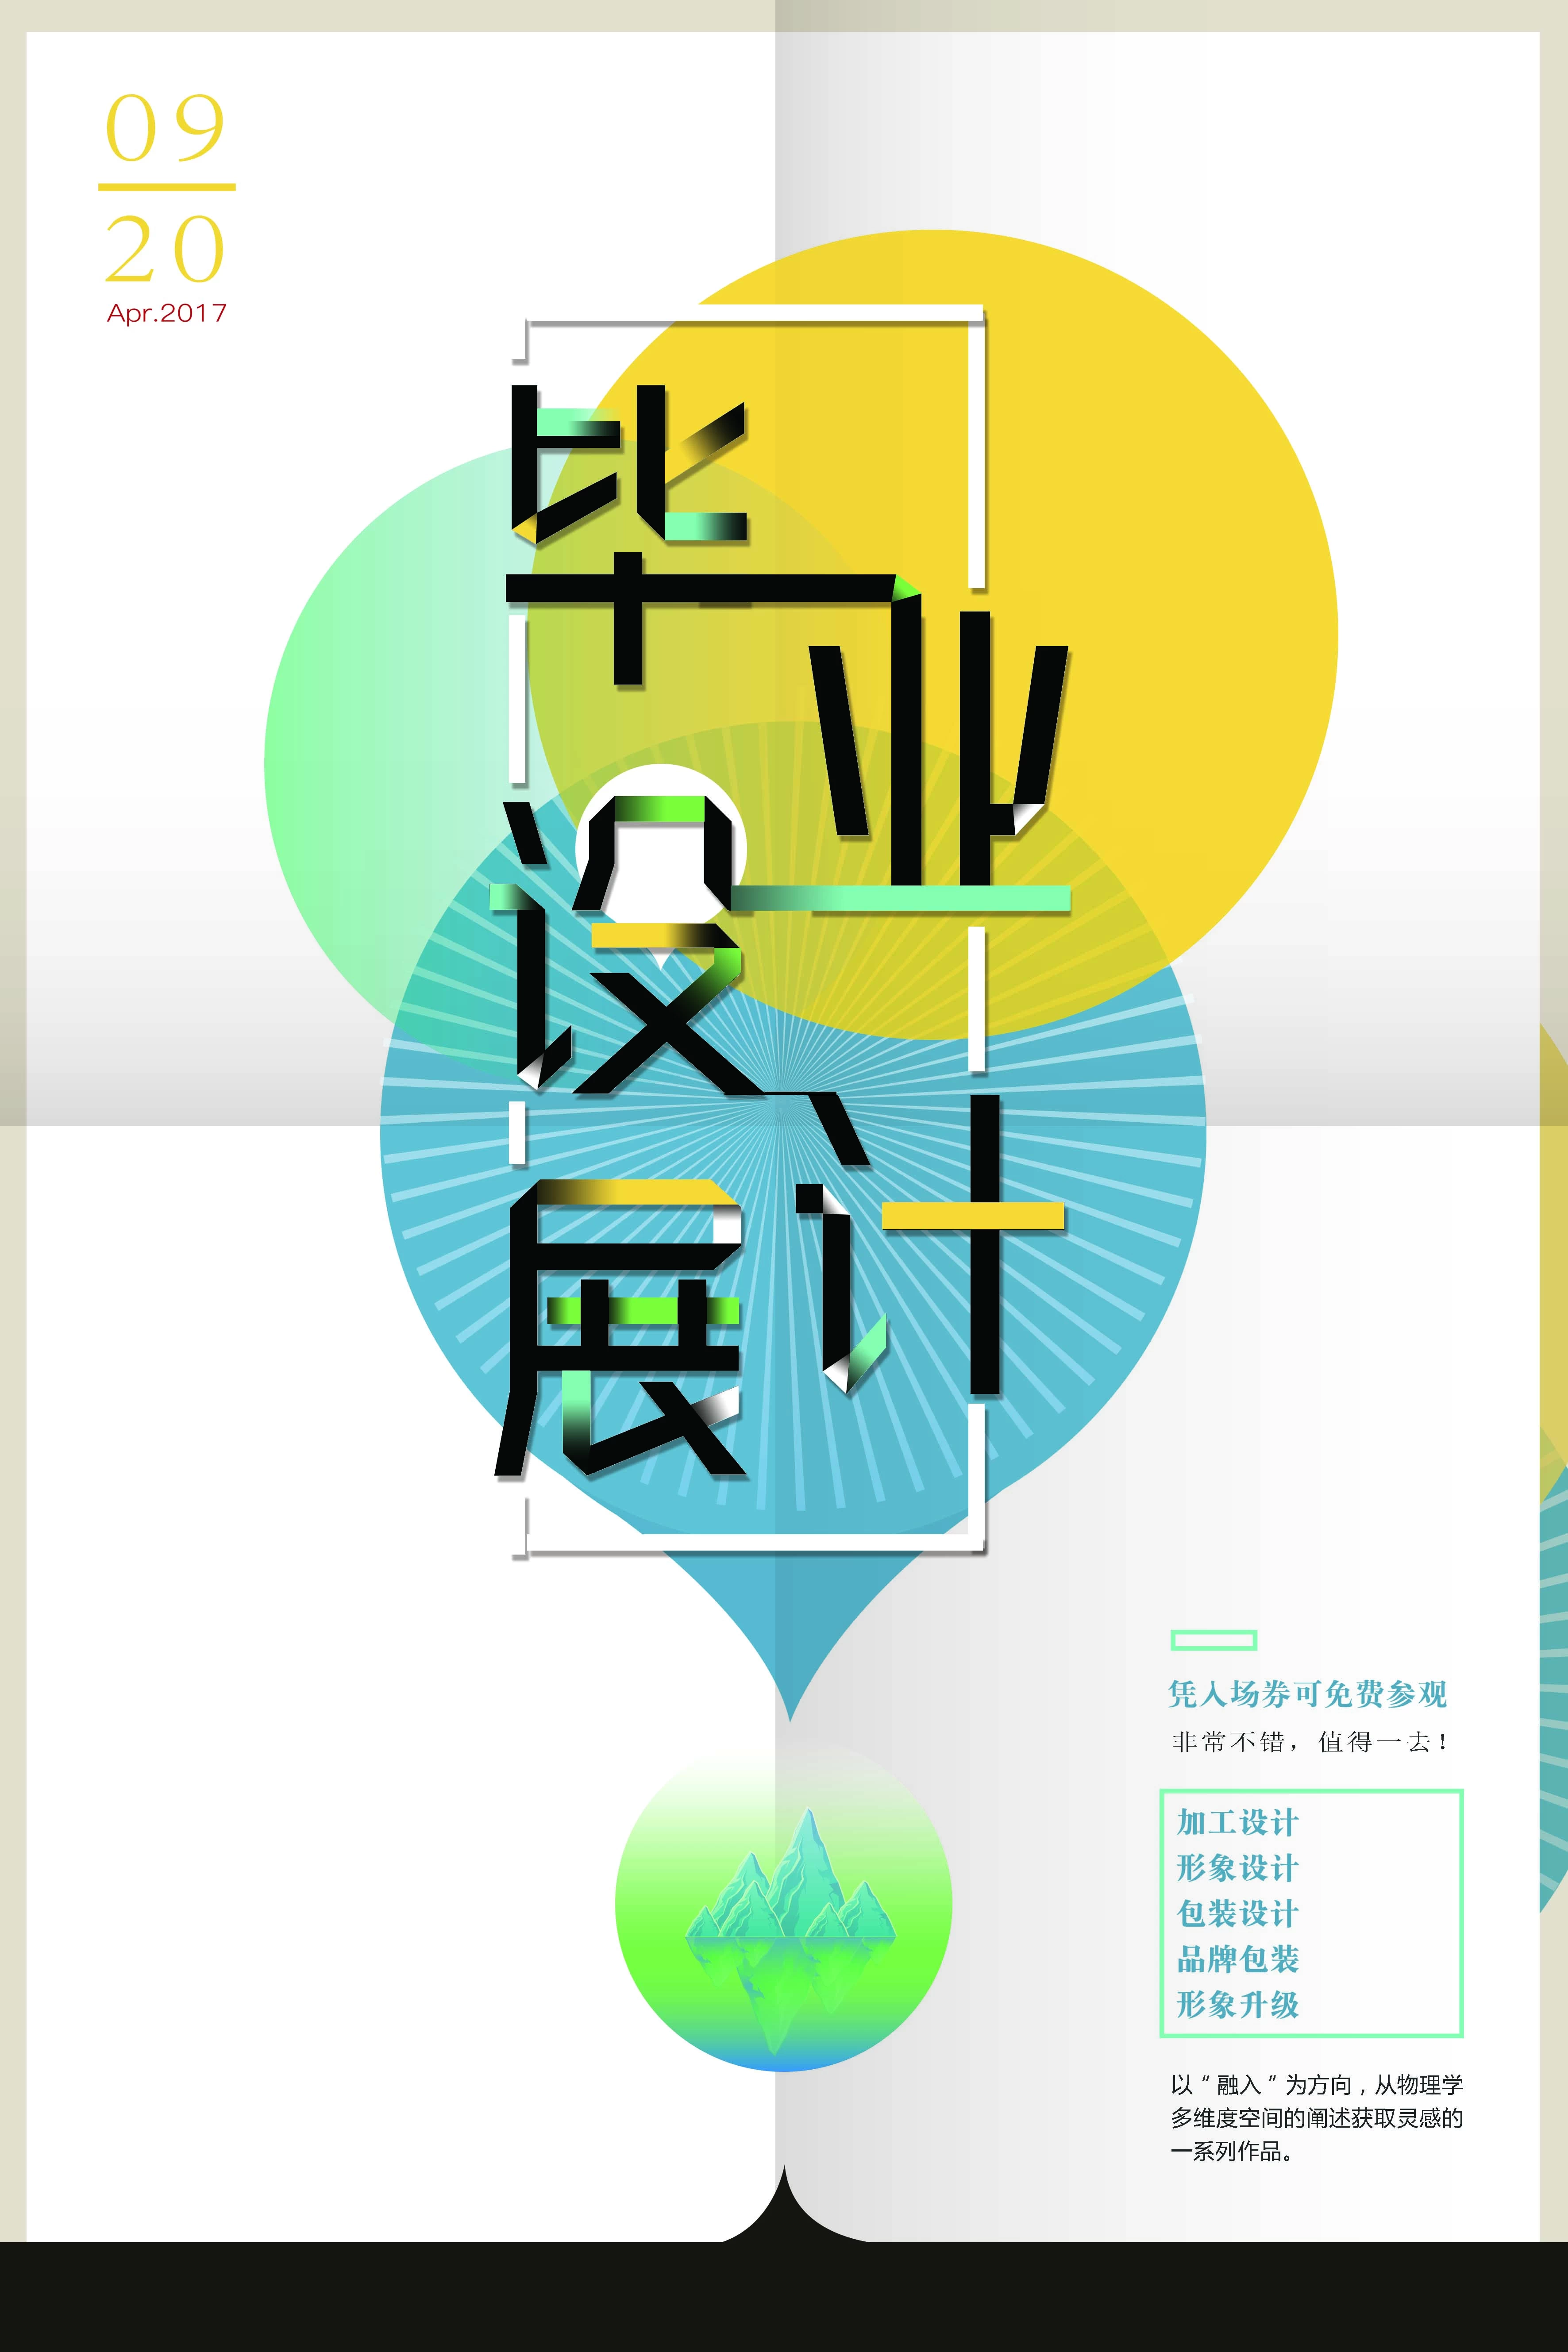 高端创意展会艺术展毕业展作品集摄影书画海报AI/PSD设计素材模板【169】